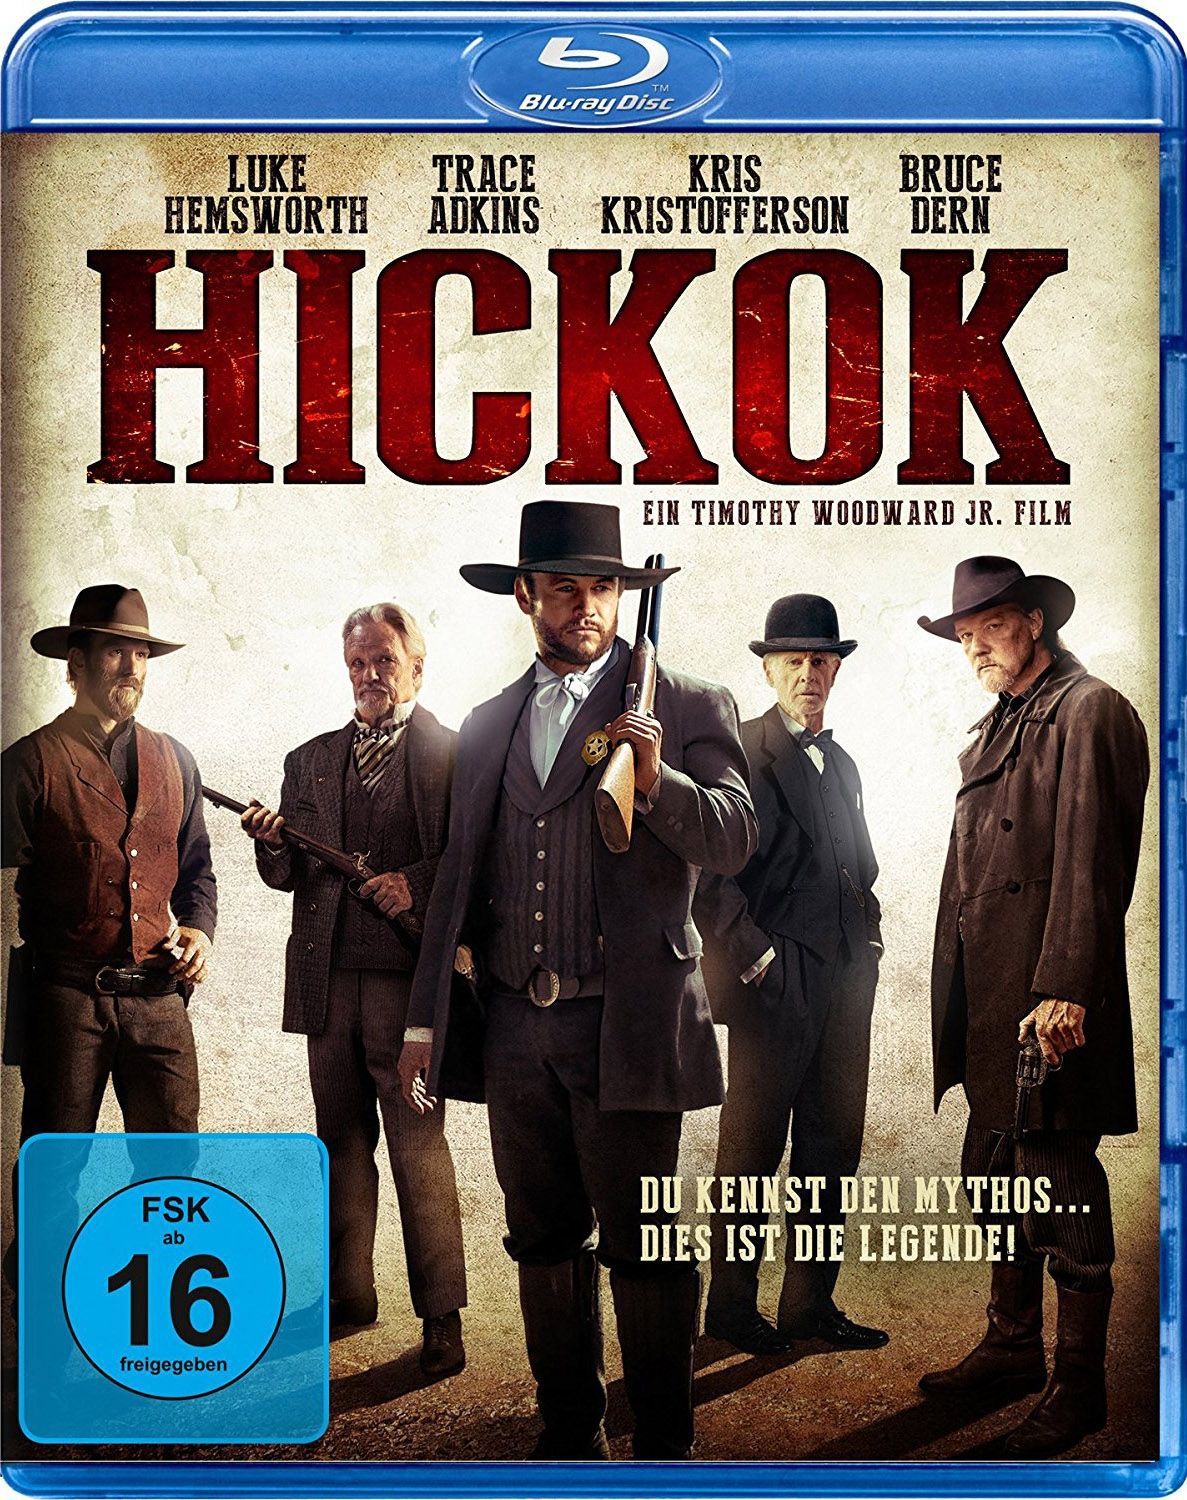 Hickok (BLURAY)